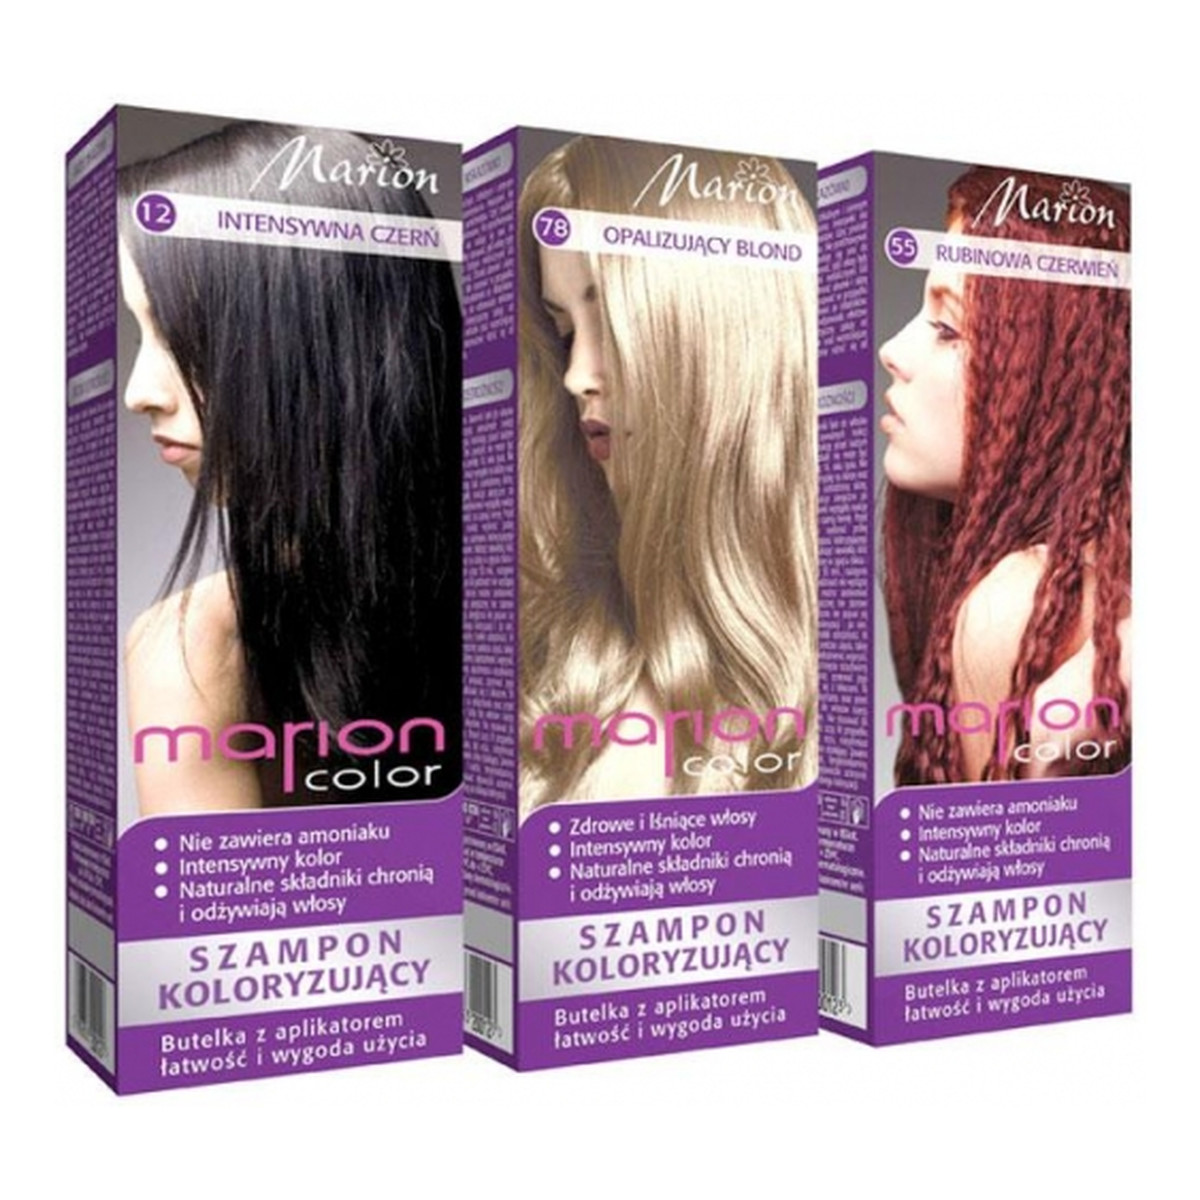 marion color szampon koloryzujący 78 opalizujący blond